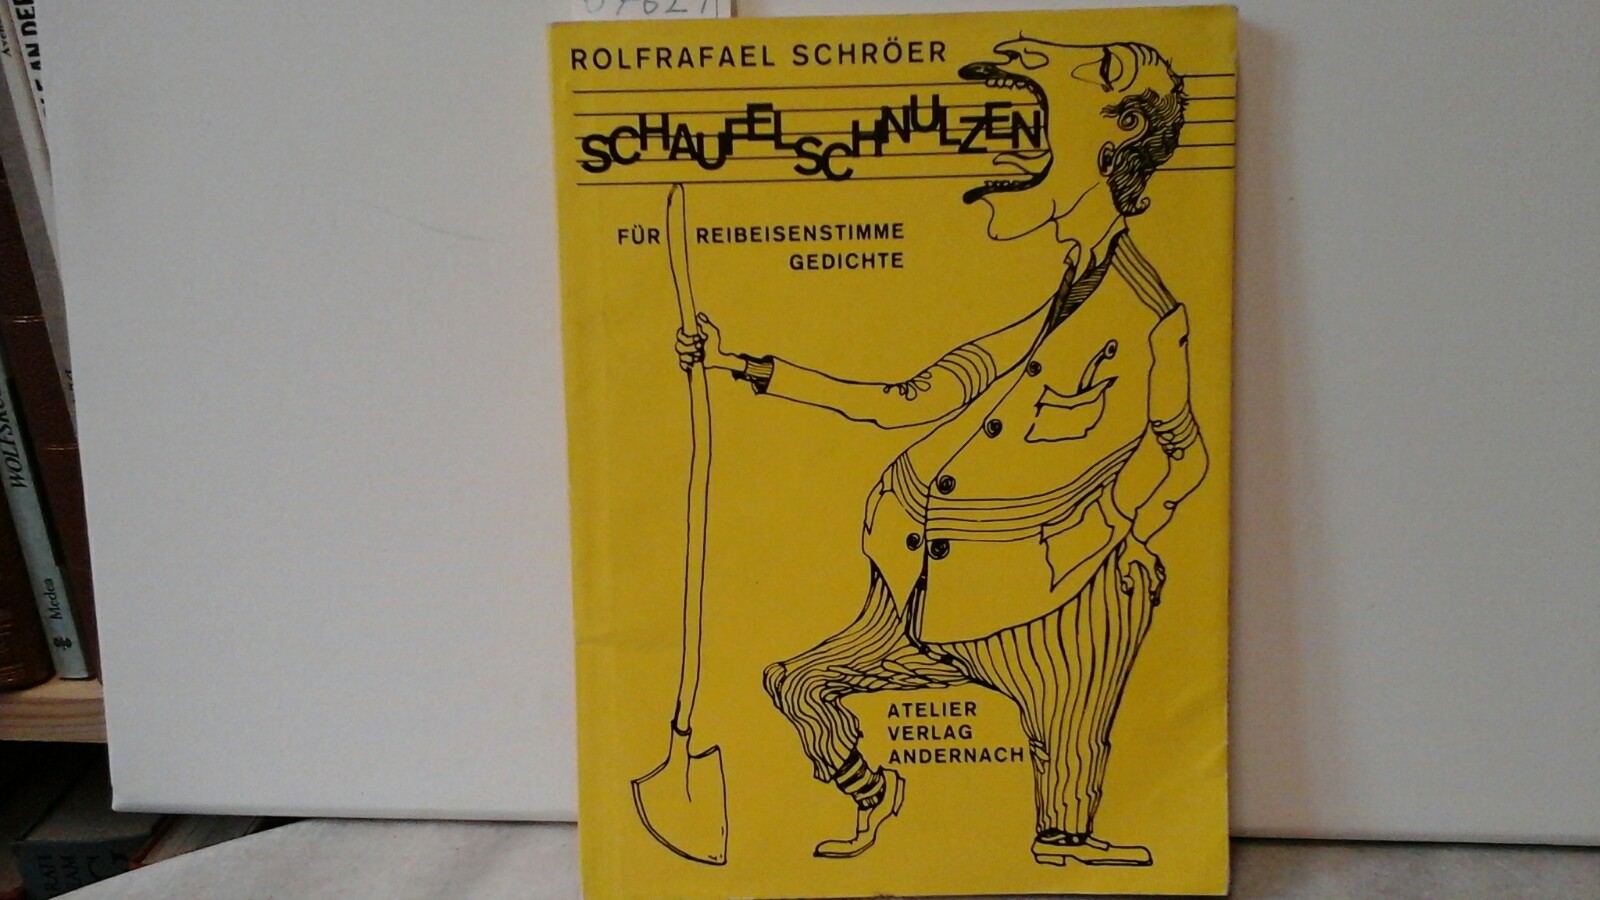 SCHRER, ROLFRAFAEL: Schaufelschnulzen. Fr Reibeisenstimme - Gedichte. Erste /1./ Auflage.